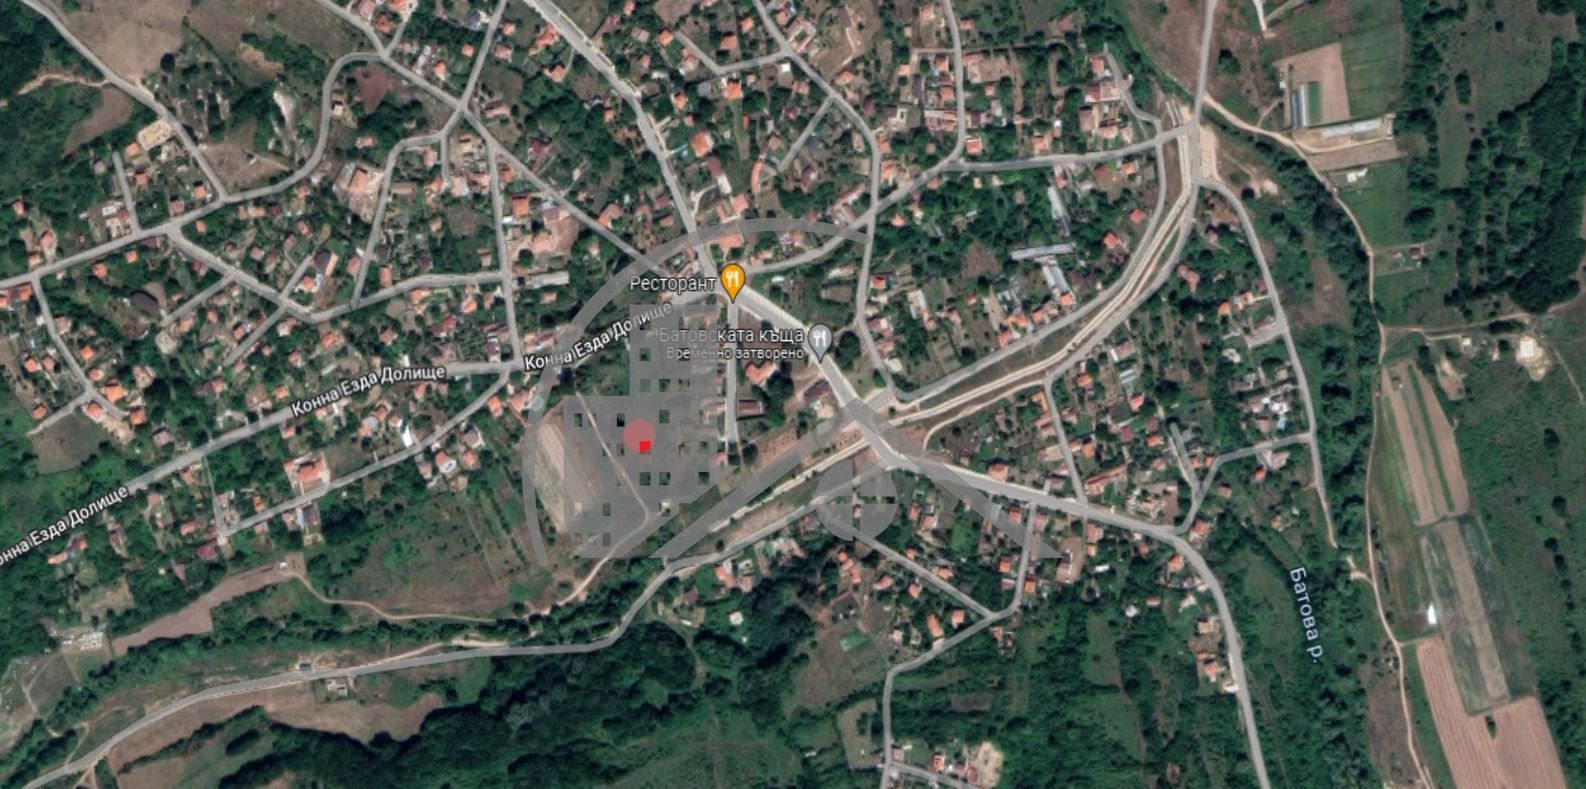 ༆Парцел във Варна област༆с.Долище༆площ 742༆цена 22000༆